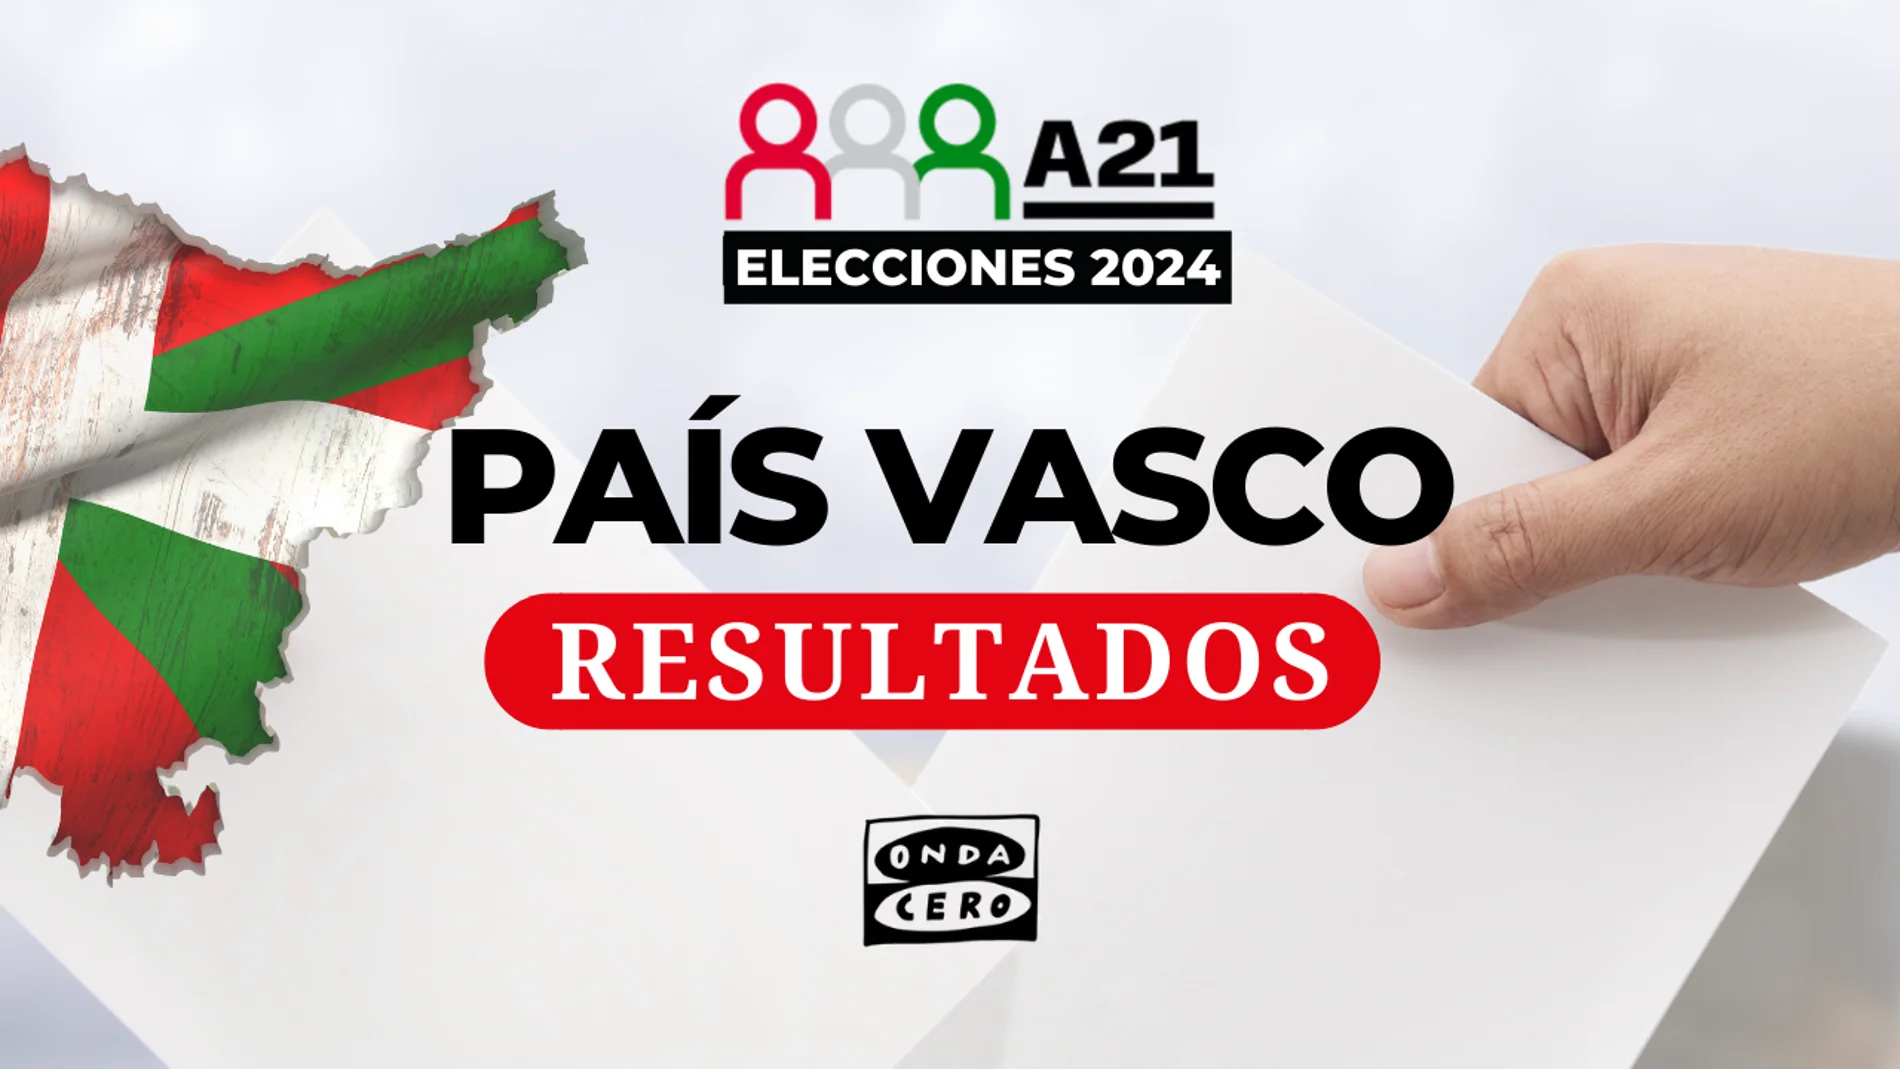 Resultados en Loiu de las elecciones en el País Vasco 2024 Onda Cero